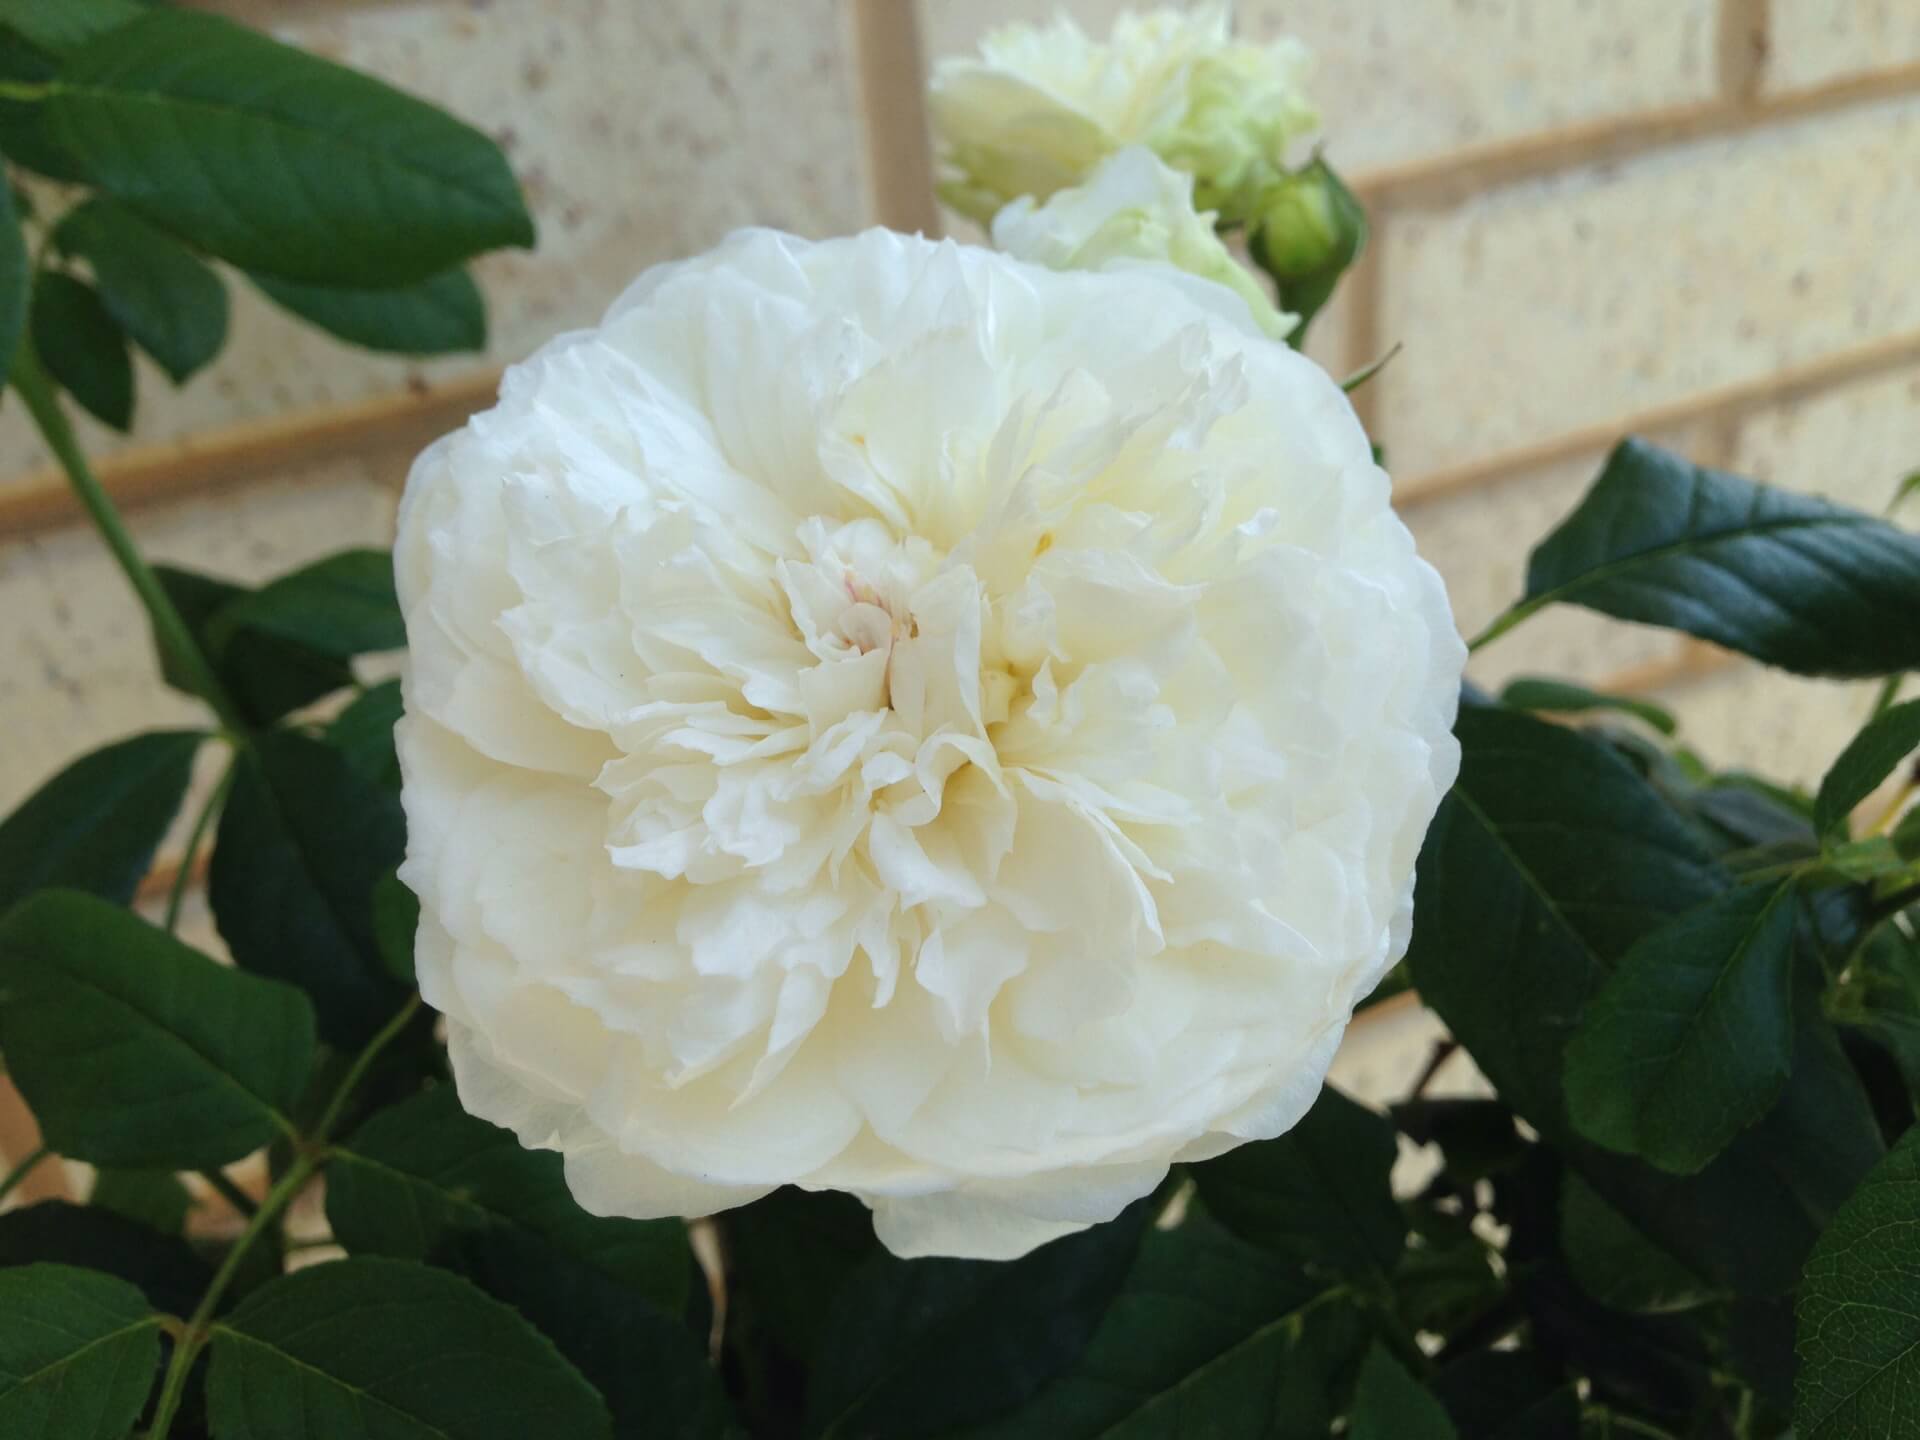 Чудесная роза клэр остин с цветками кремово-белого цвета и волшебным ароматом